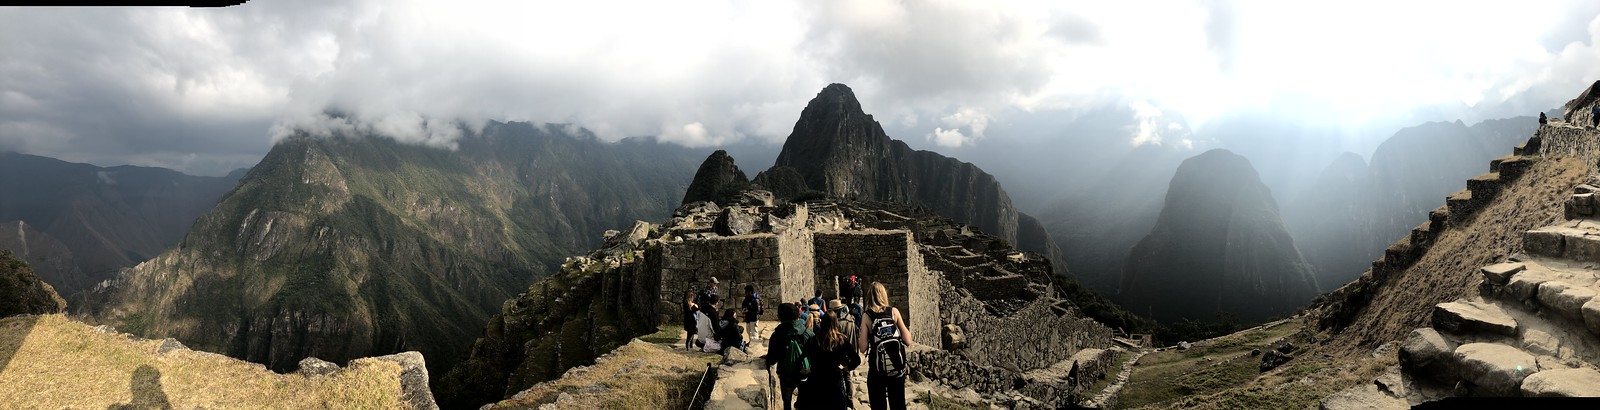 2019_EXPD_Machu Picchu 65